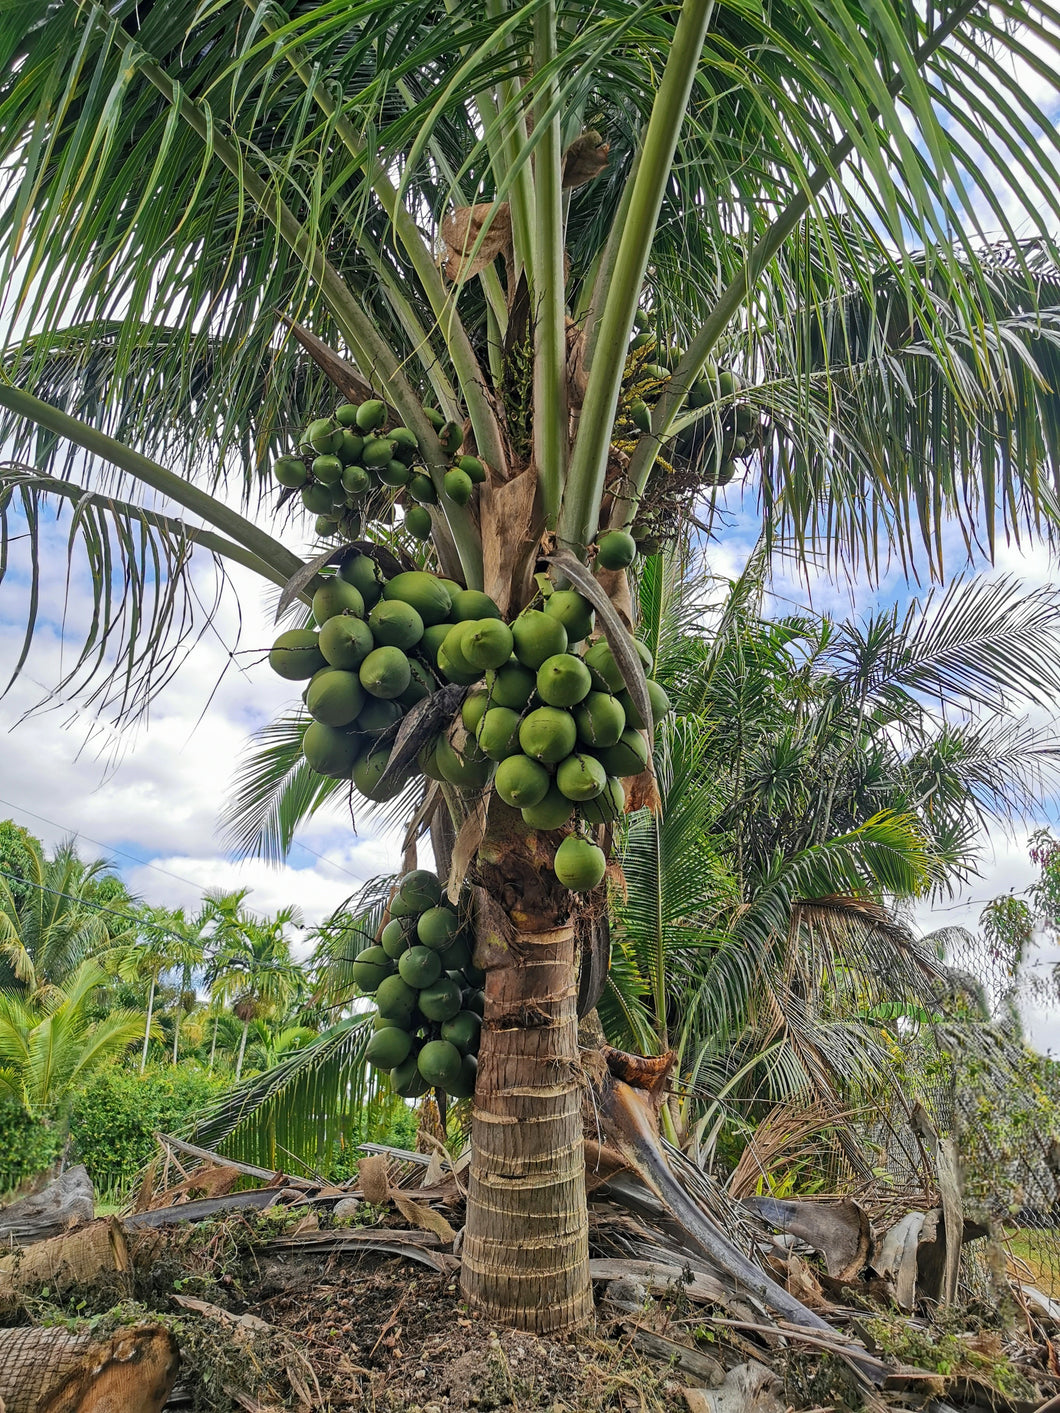 Semilla de coco enano jamaicano/malayo Cocos nucifera Palmera tropical.